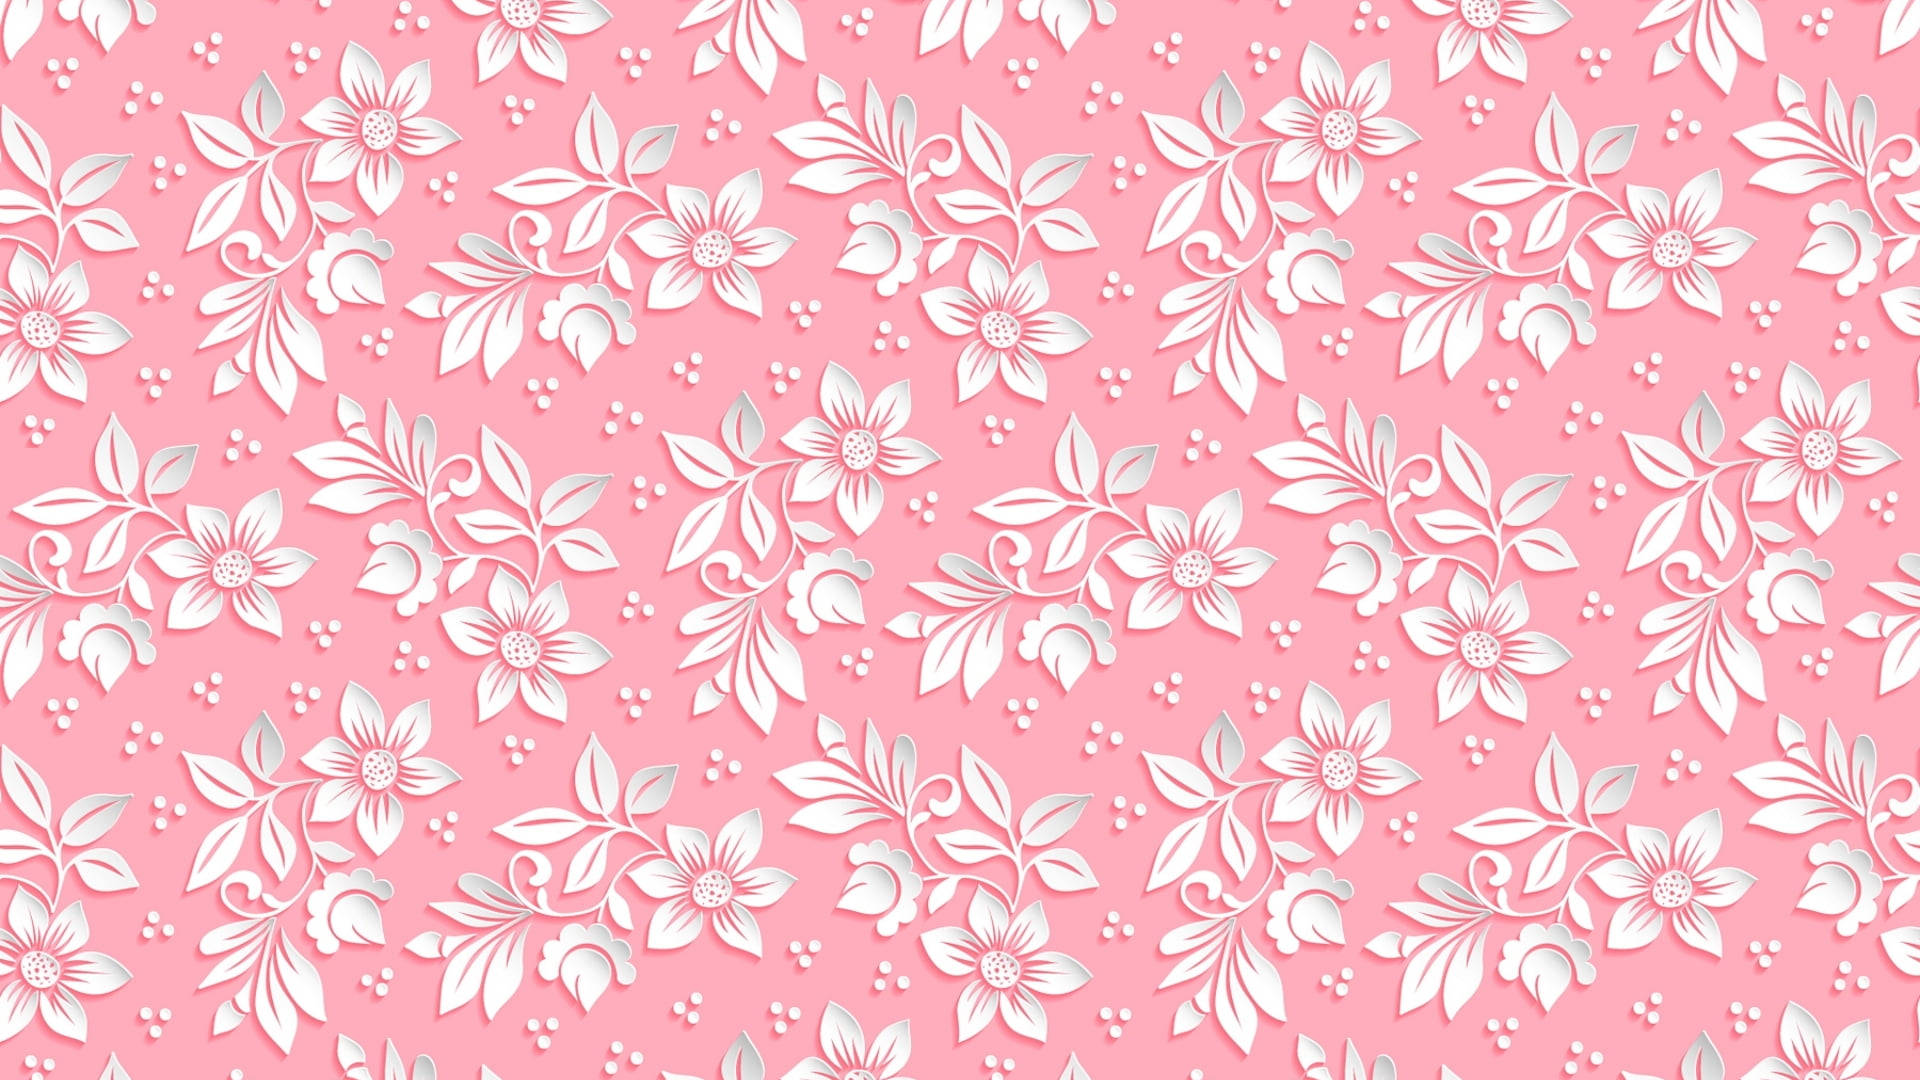 Wallpaperpapel De Parede Para Computador Com Flores Rosa E Brancas. Papel de Parede